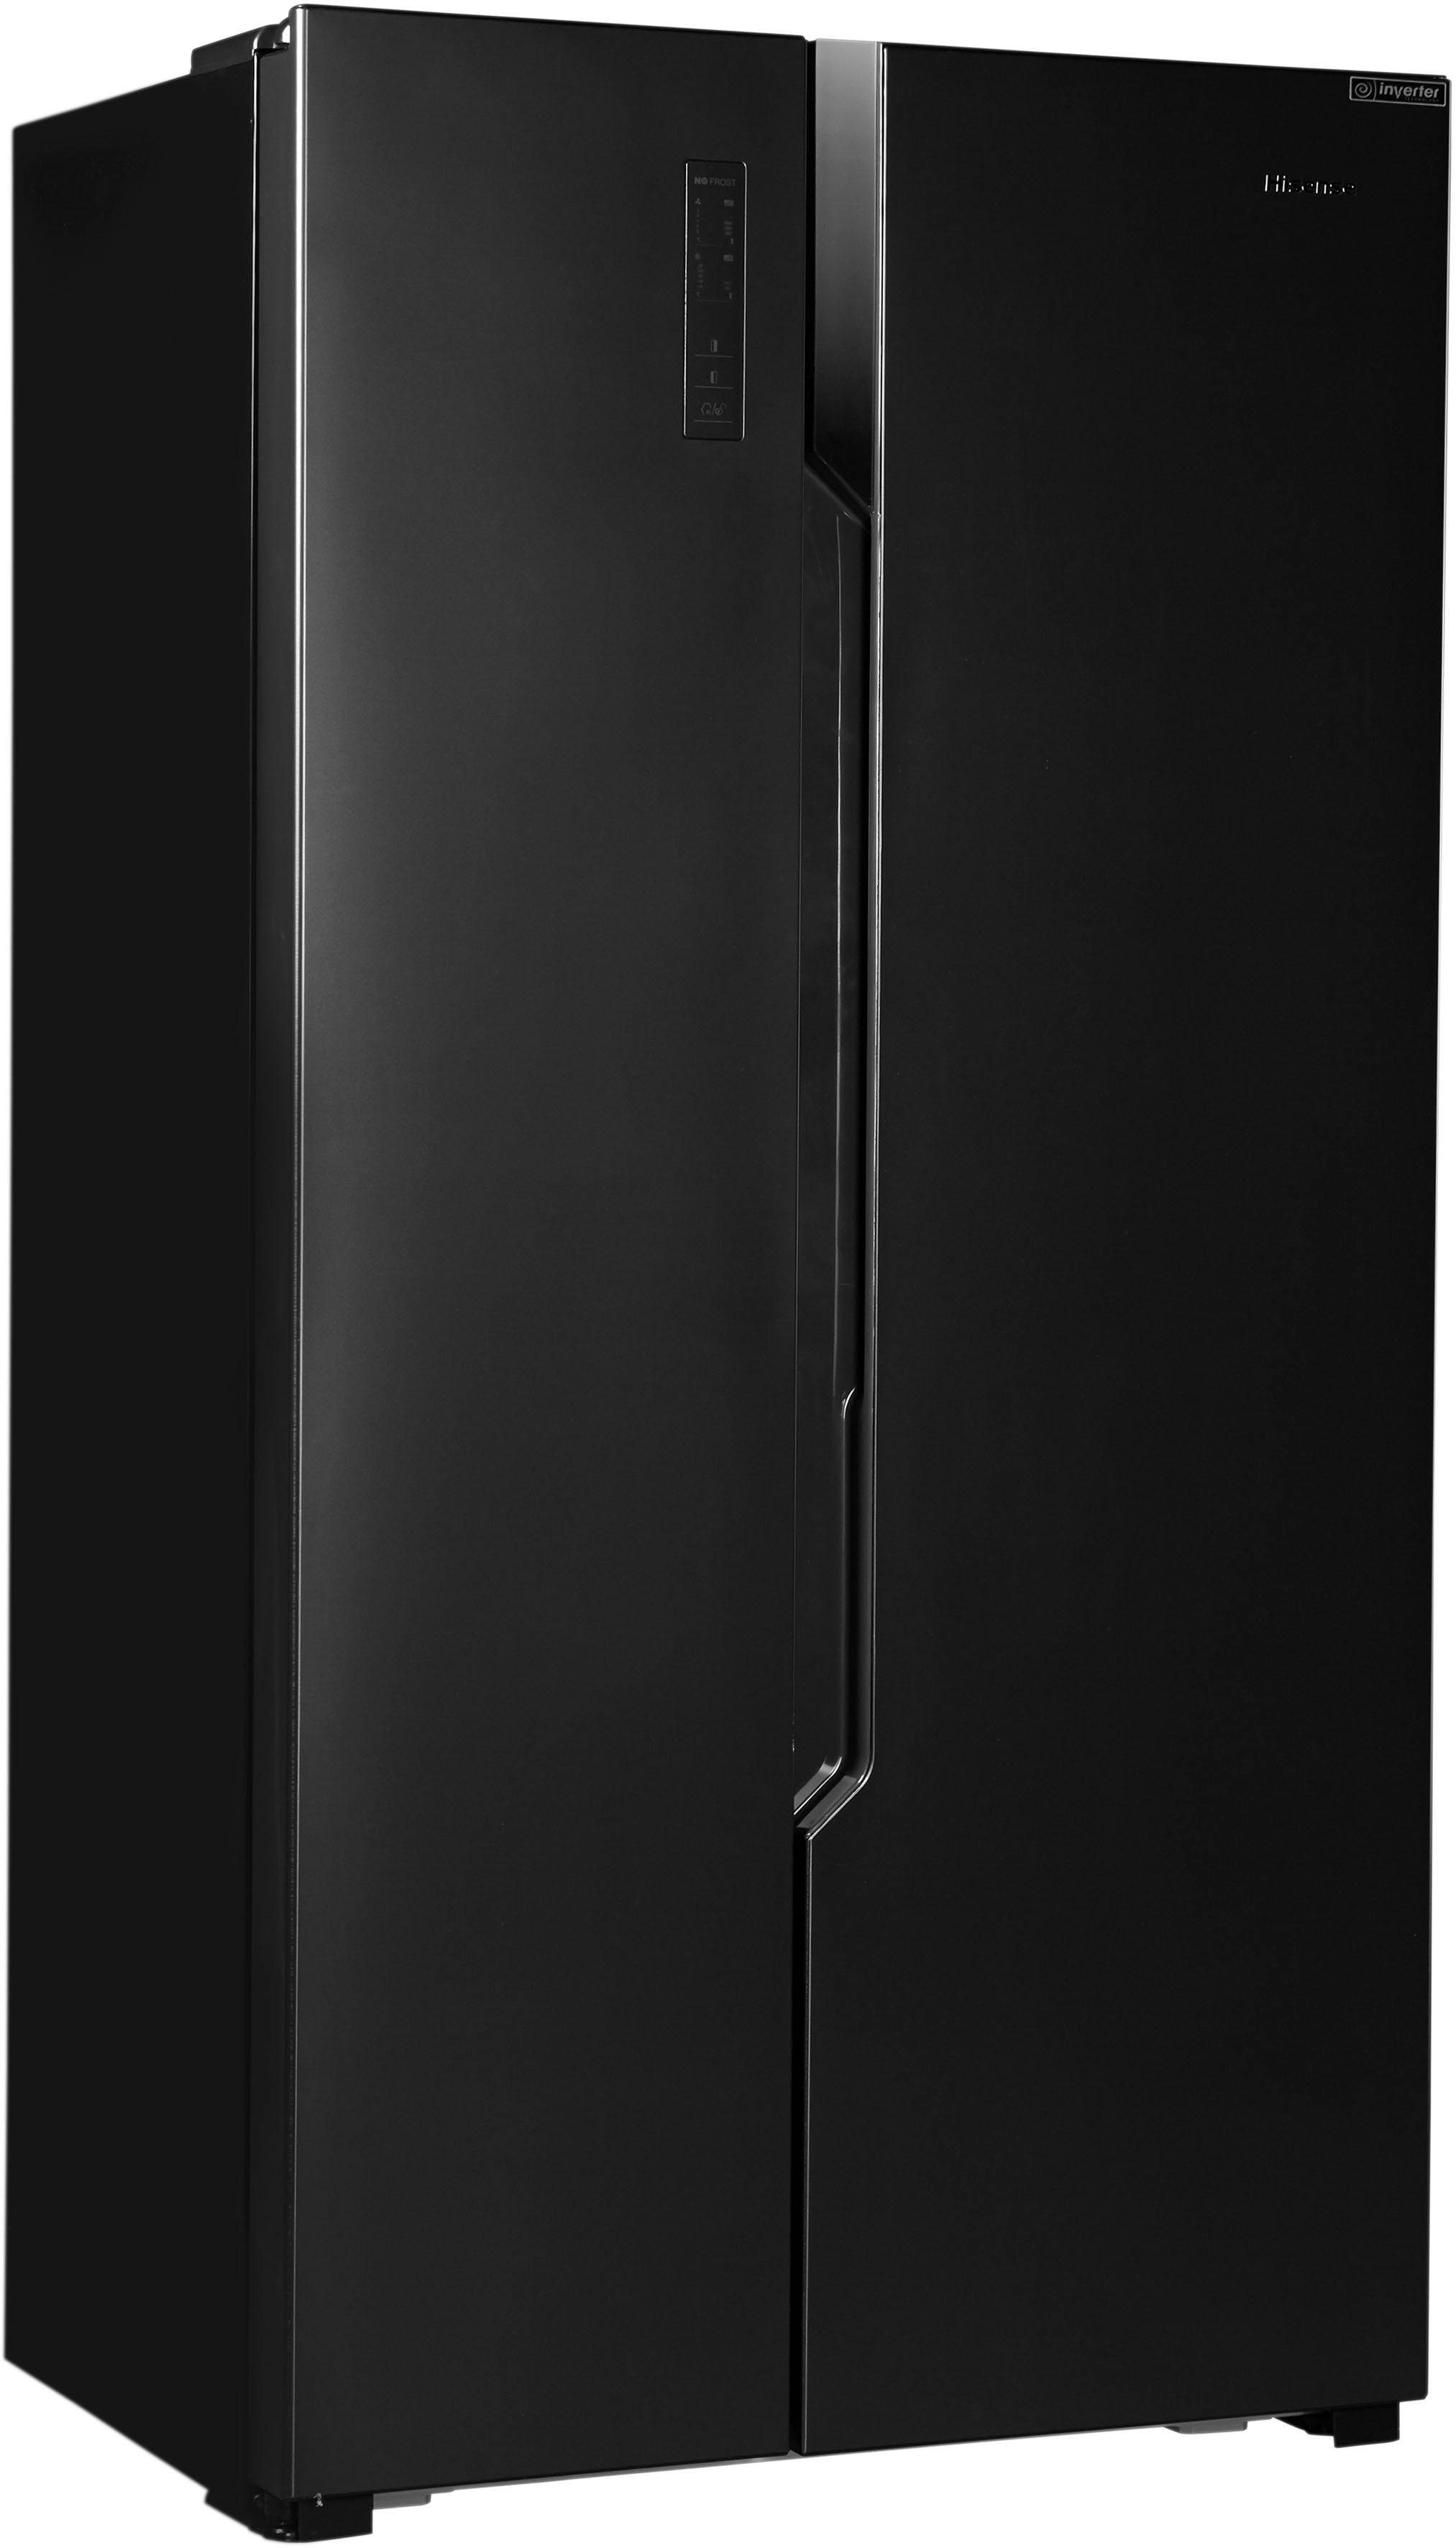 Hisense Side-by-Side RS670N4BF3, 178,6 cm hoch, 91 cm breit online kaufen |  OTTO